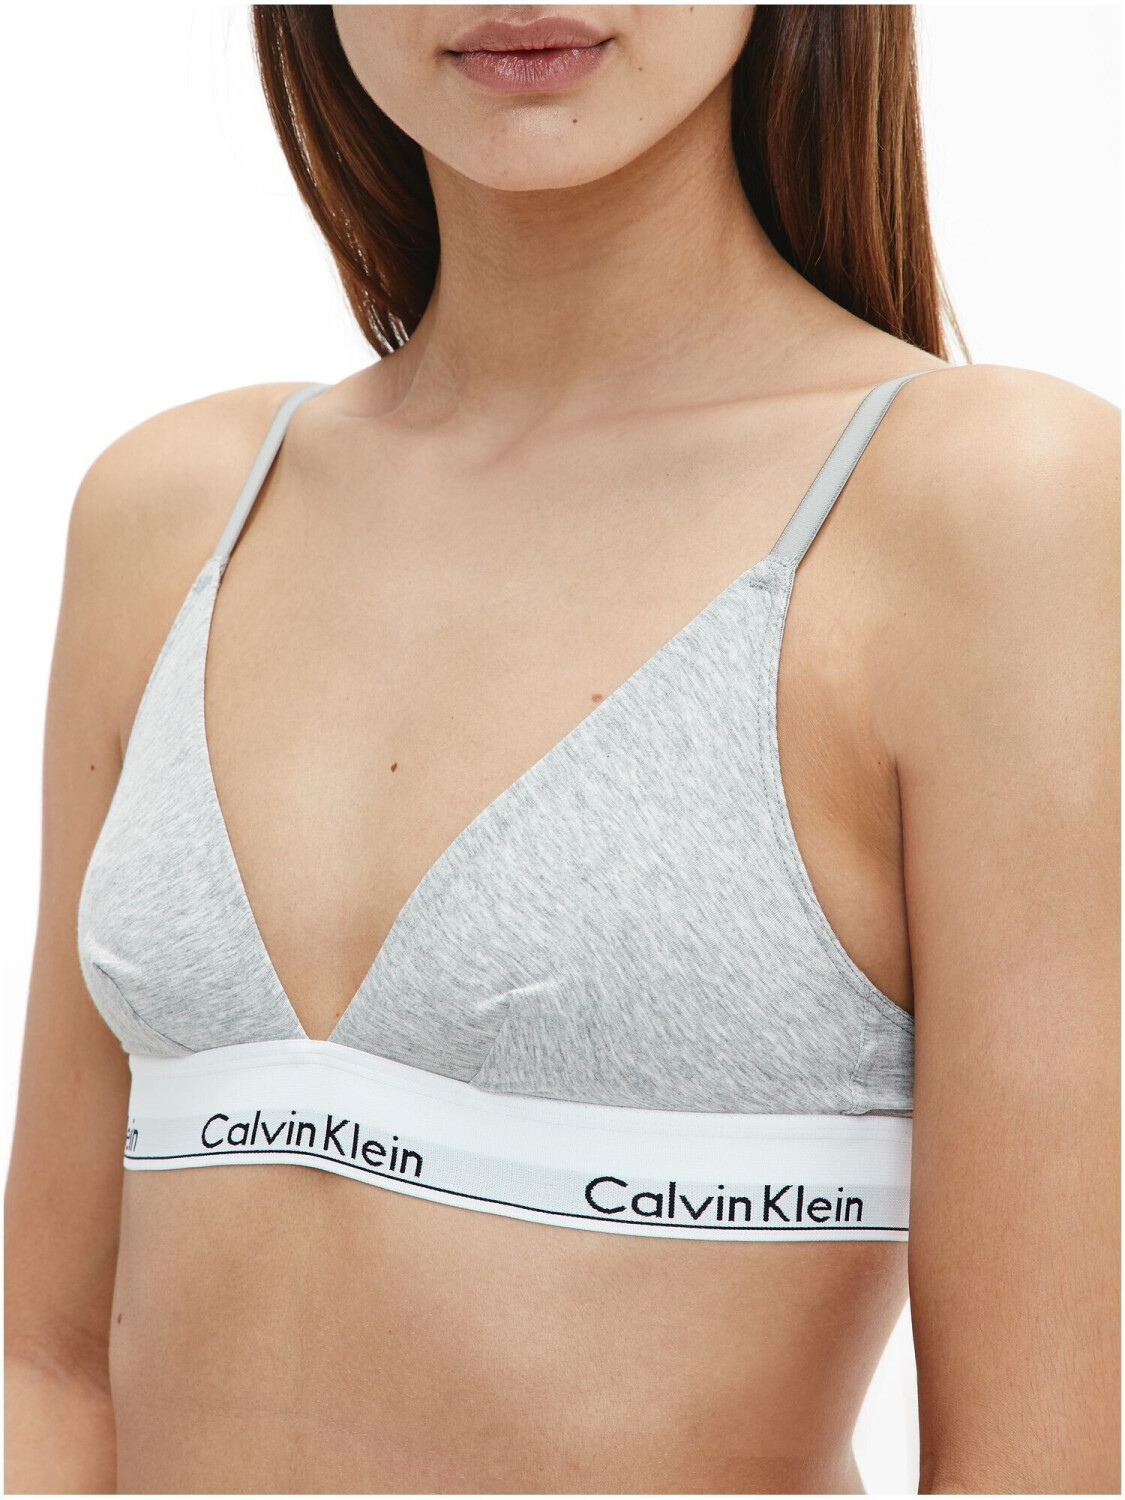 Calvin Klein Triangle 21,99 | Modern Bra bei Preisvergleich Cotton Unlined € ab grey